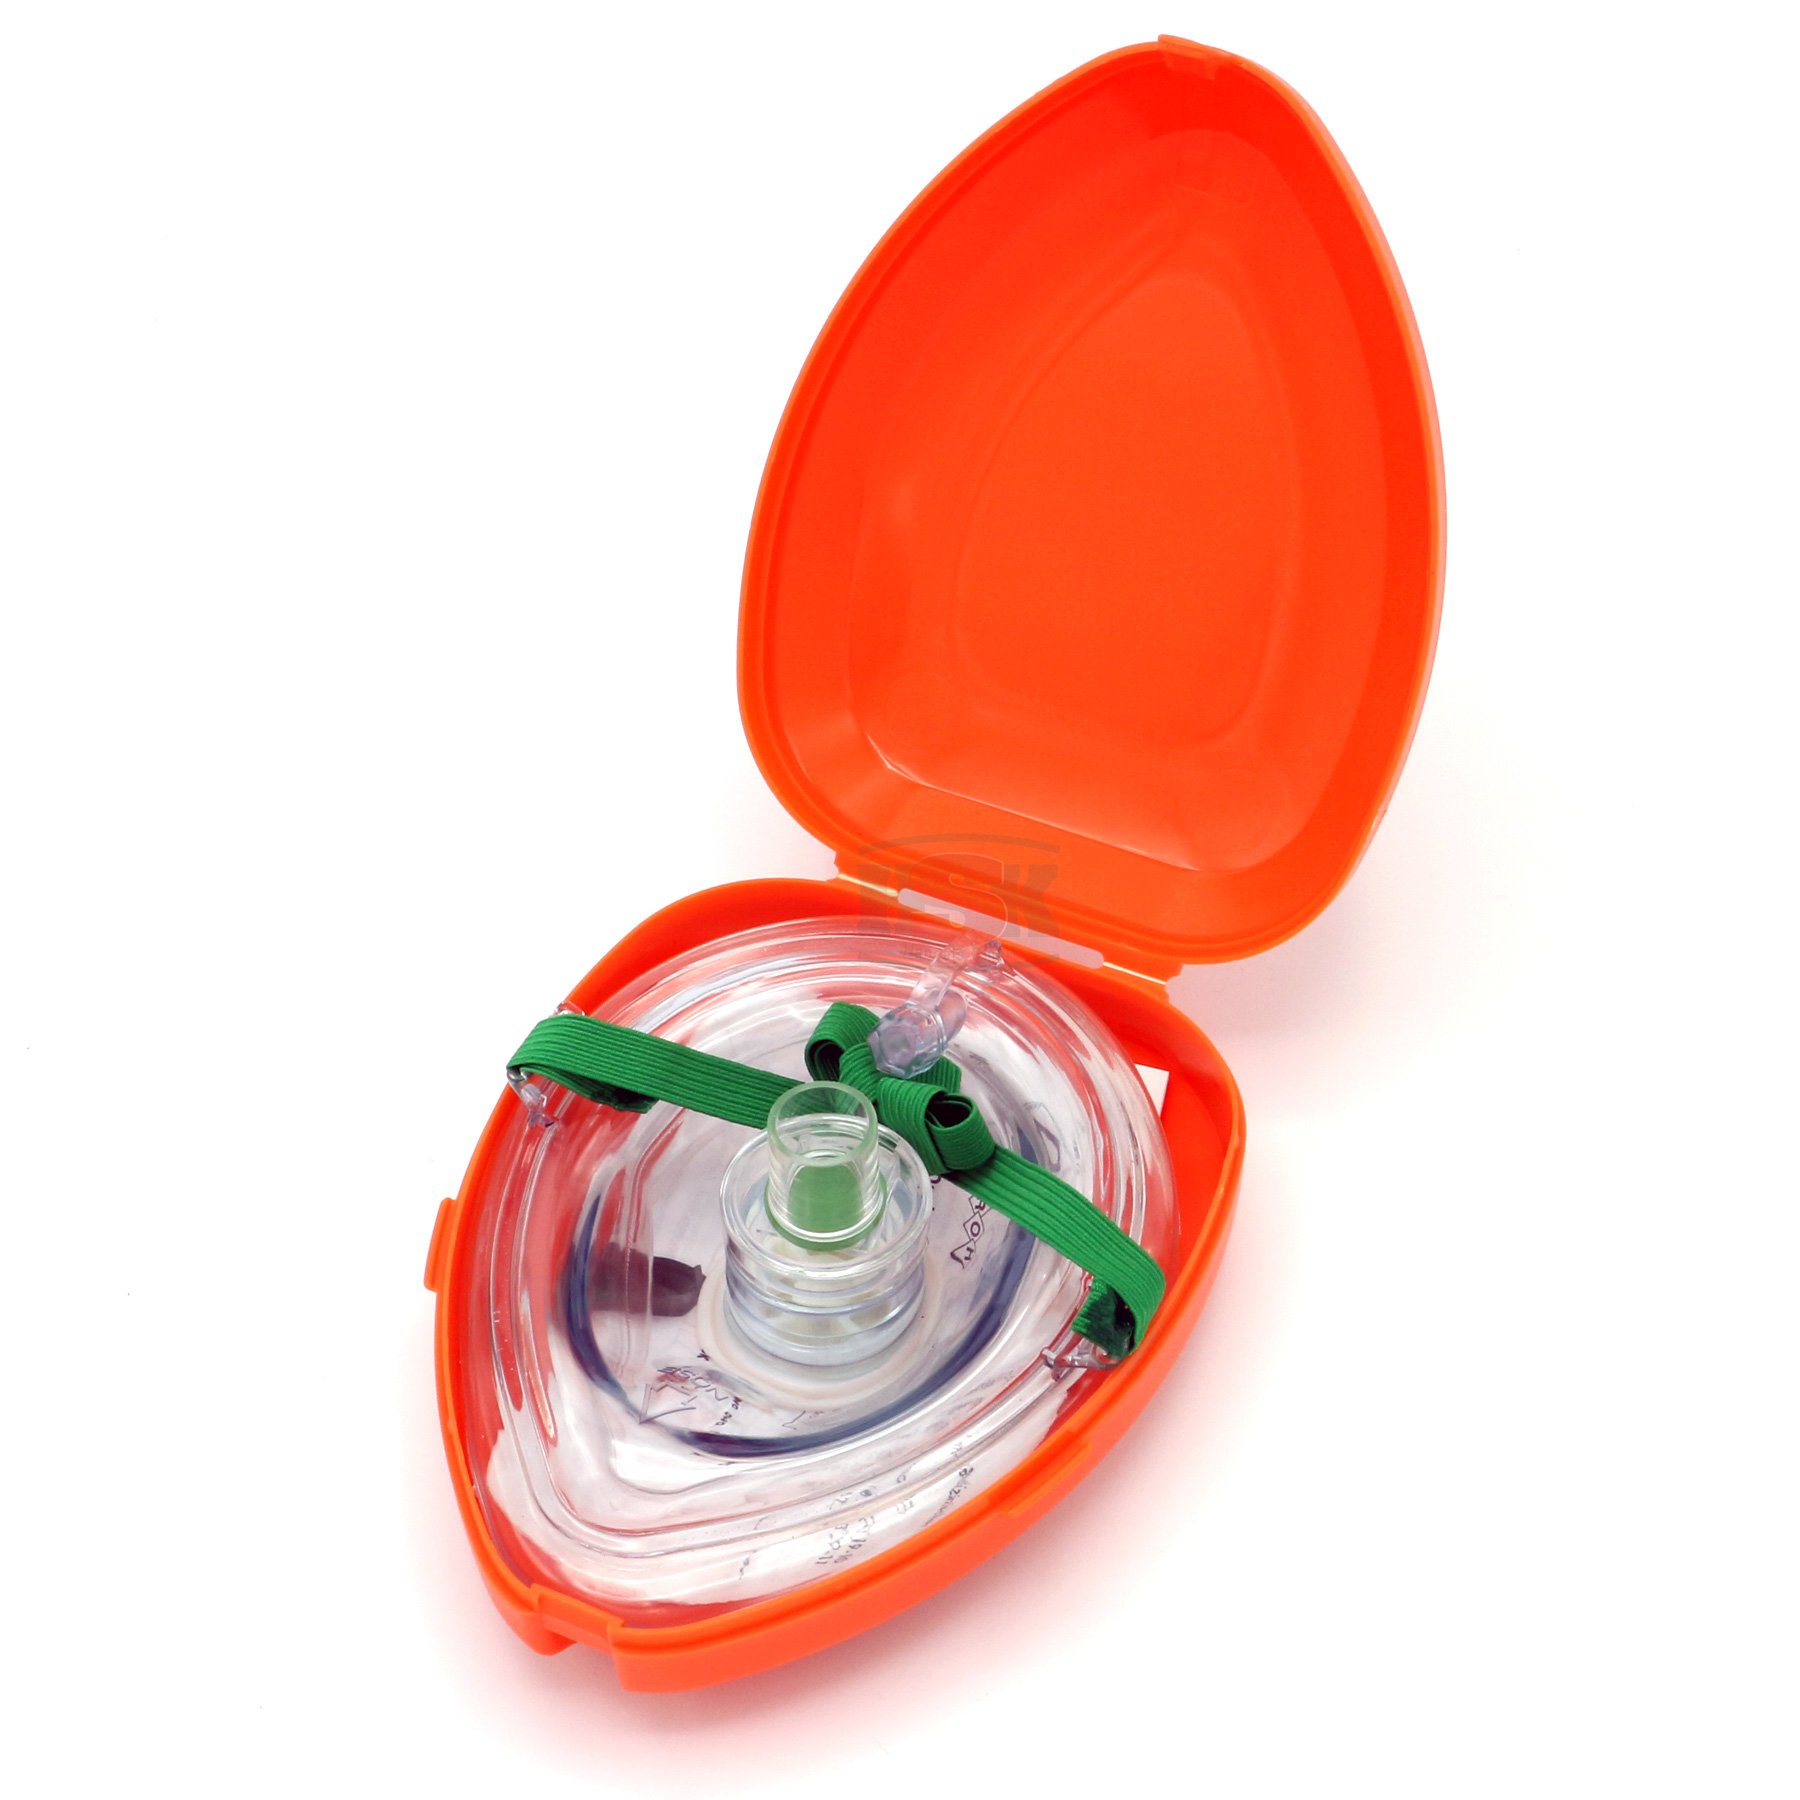 Erwachsenen- und Säuglings-CPR-Taschenmasken im Hartschalenkoffer, FDA-registrierte, ISO-zertifizierte Hersteller von CPR-Masken und  Gesichtsschutzschilden